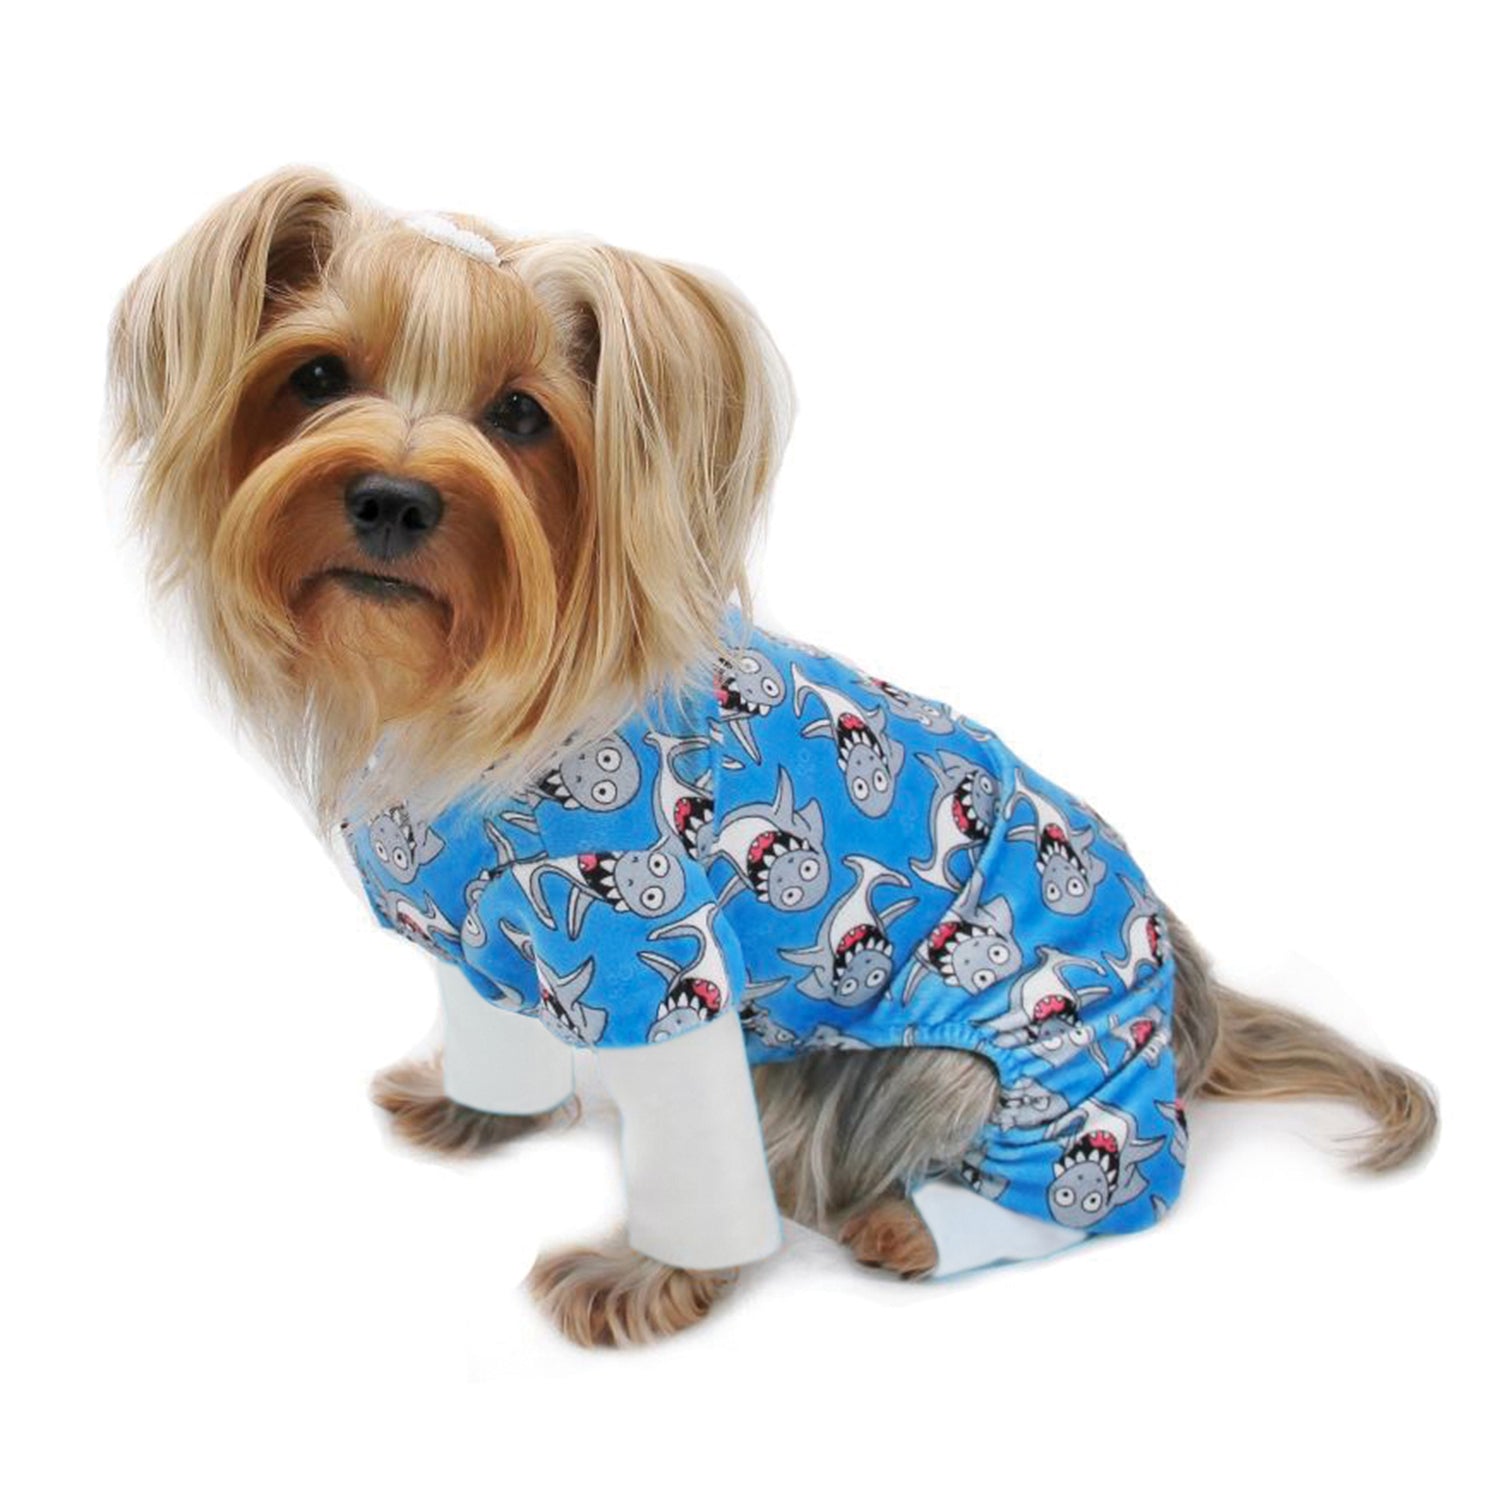 Shark Frenzy Pet Pajamas - Pet Pjs, Dog Pajamas